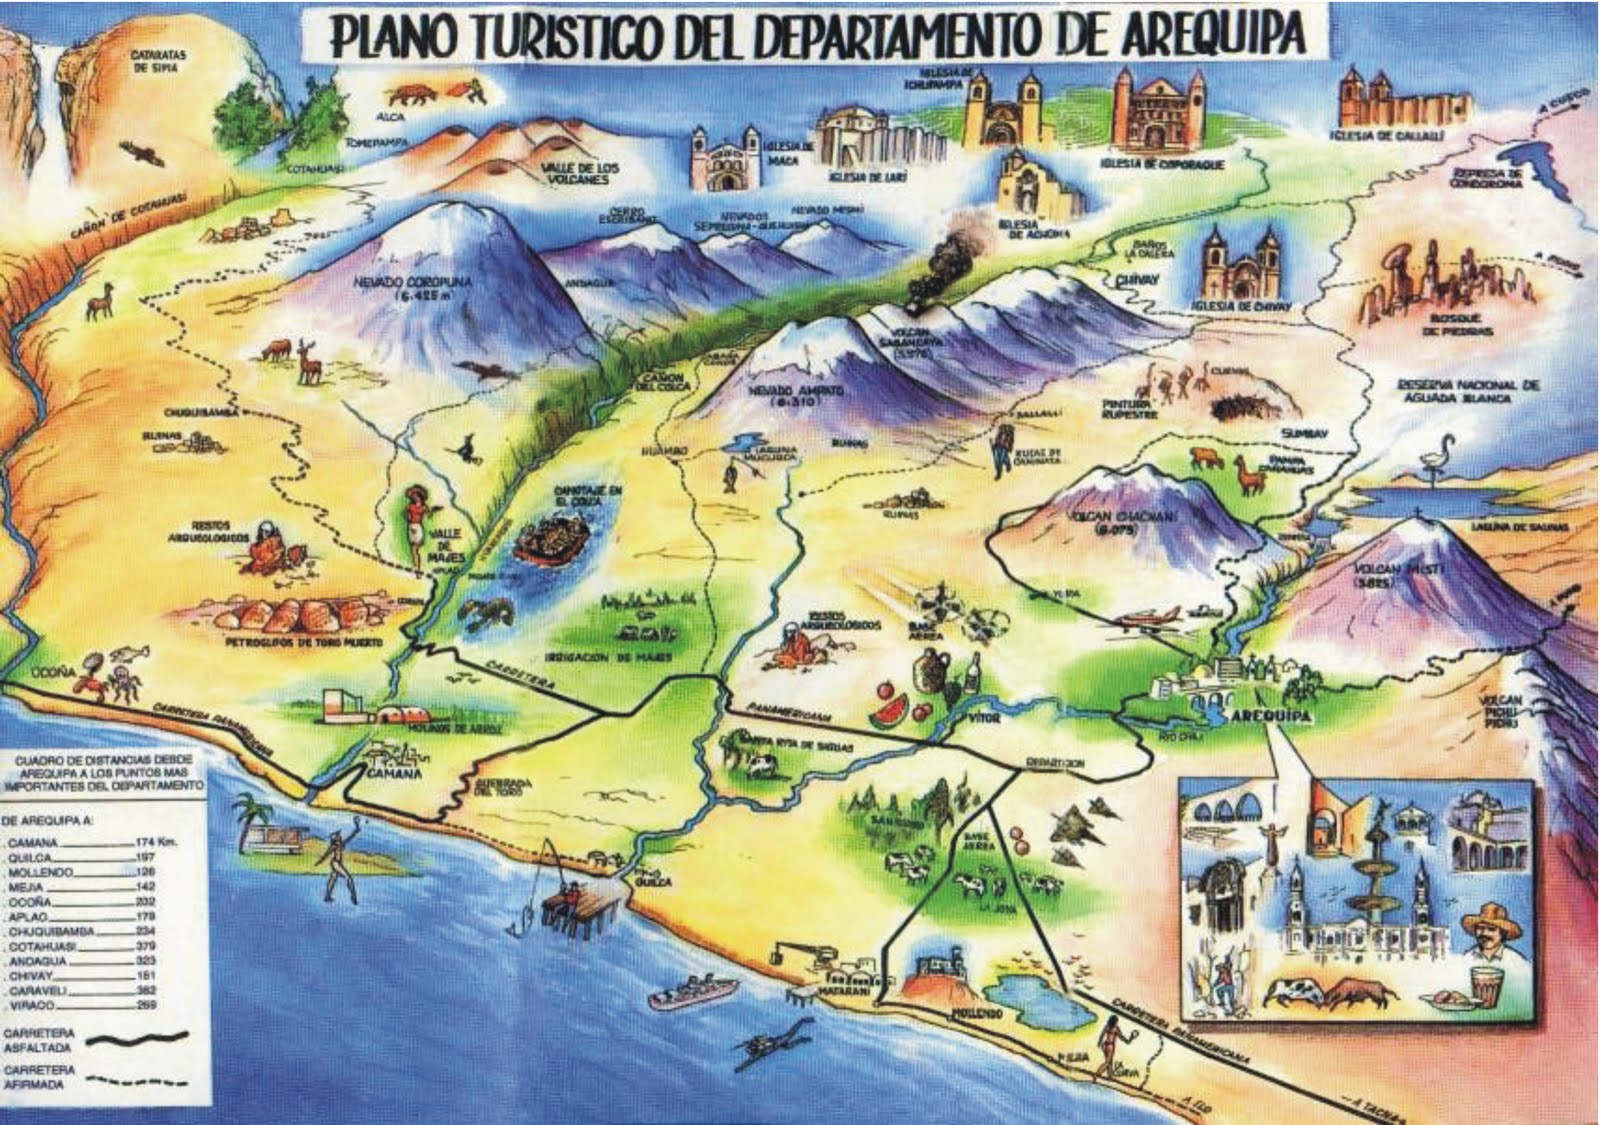 Mapa De Arequipa